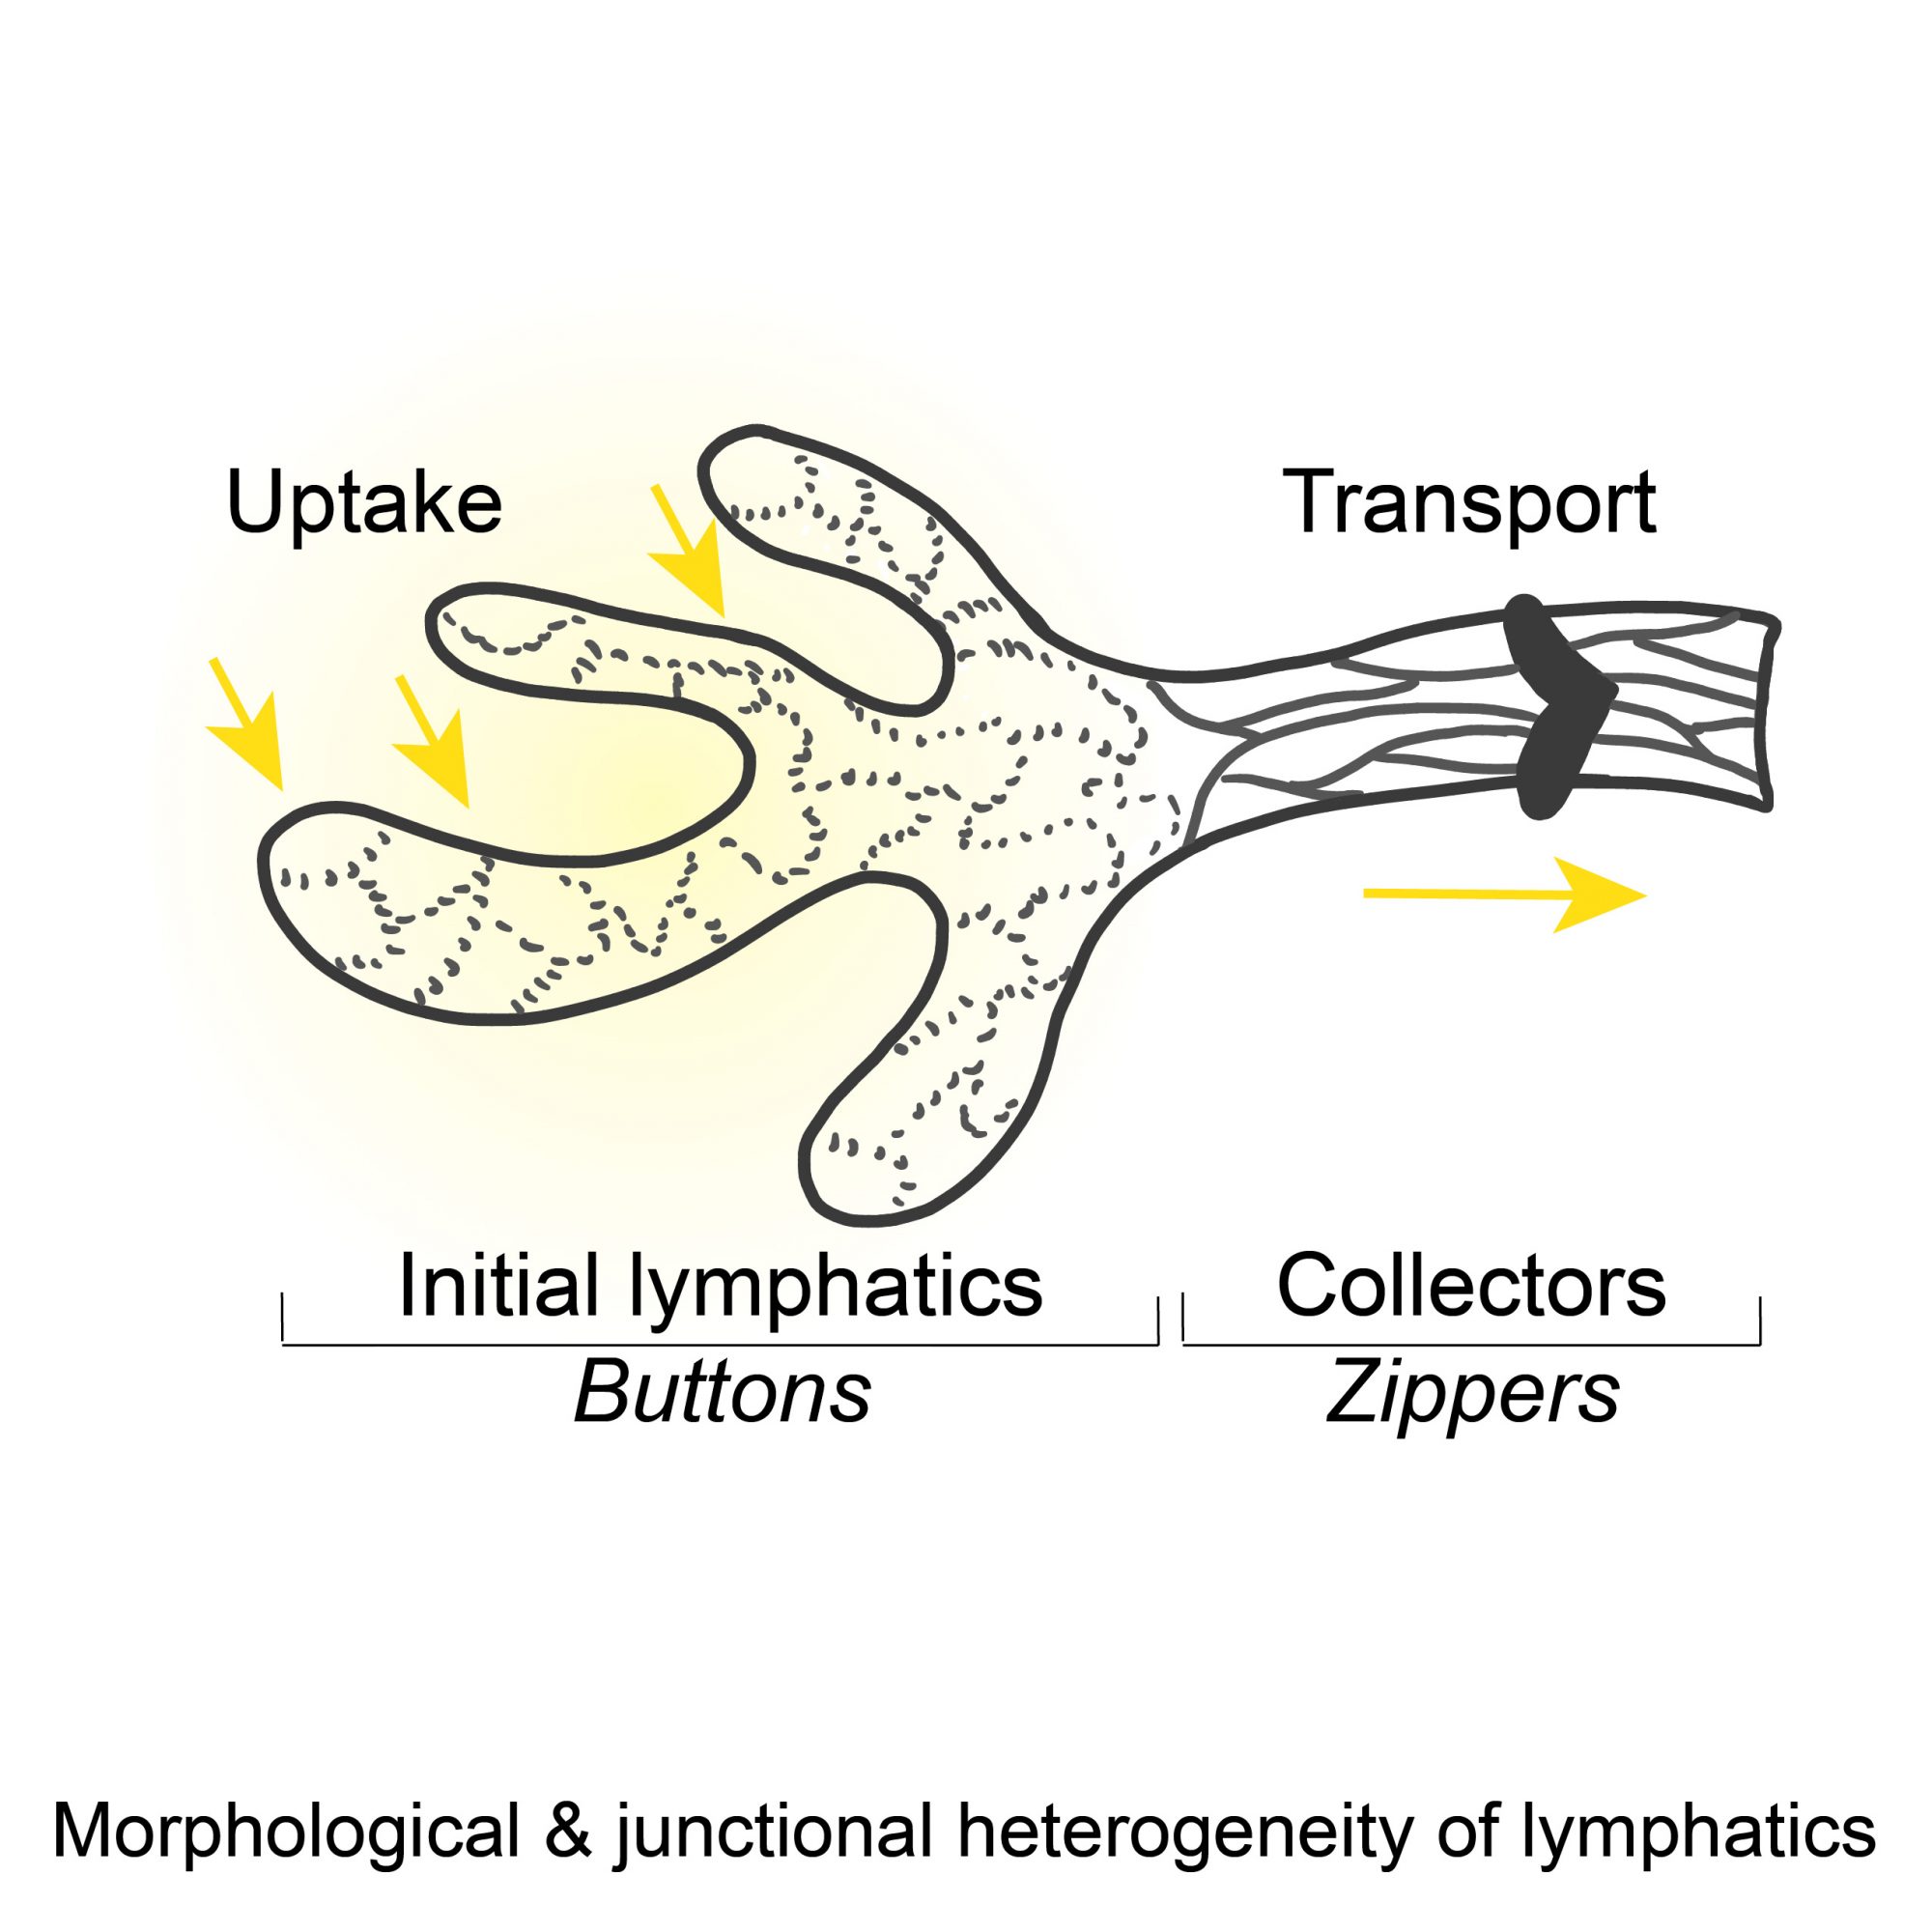 Lymphatic junction heterogeneity